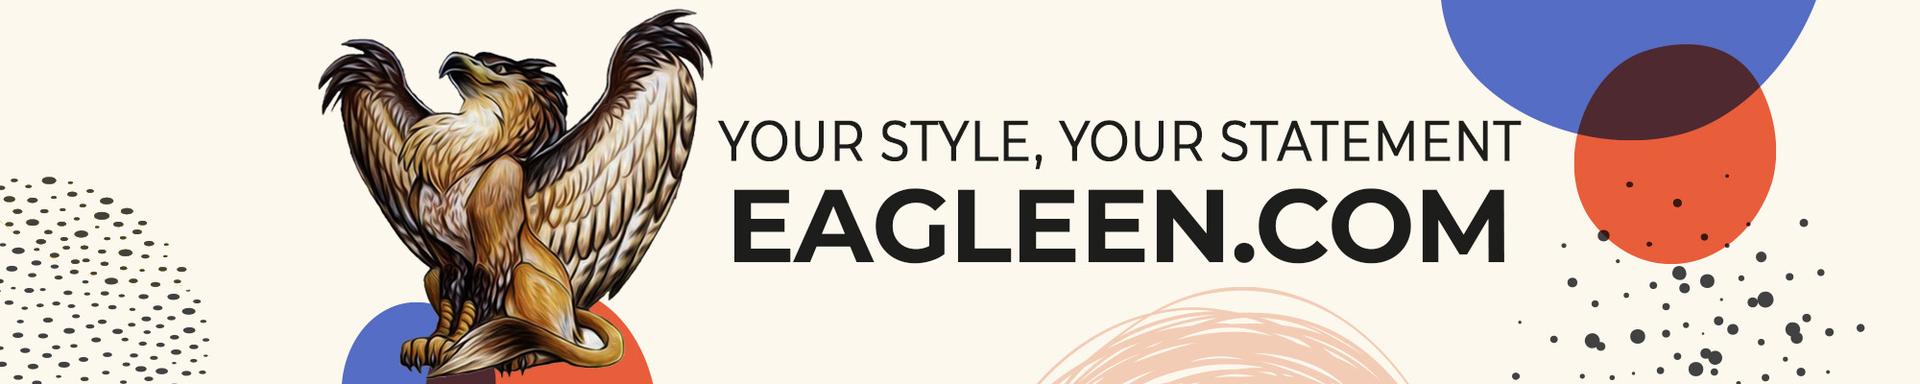 Banner for eagleen.com